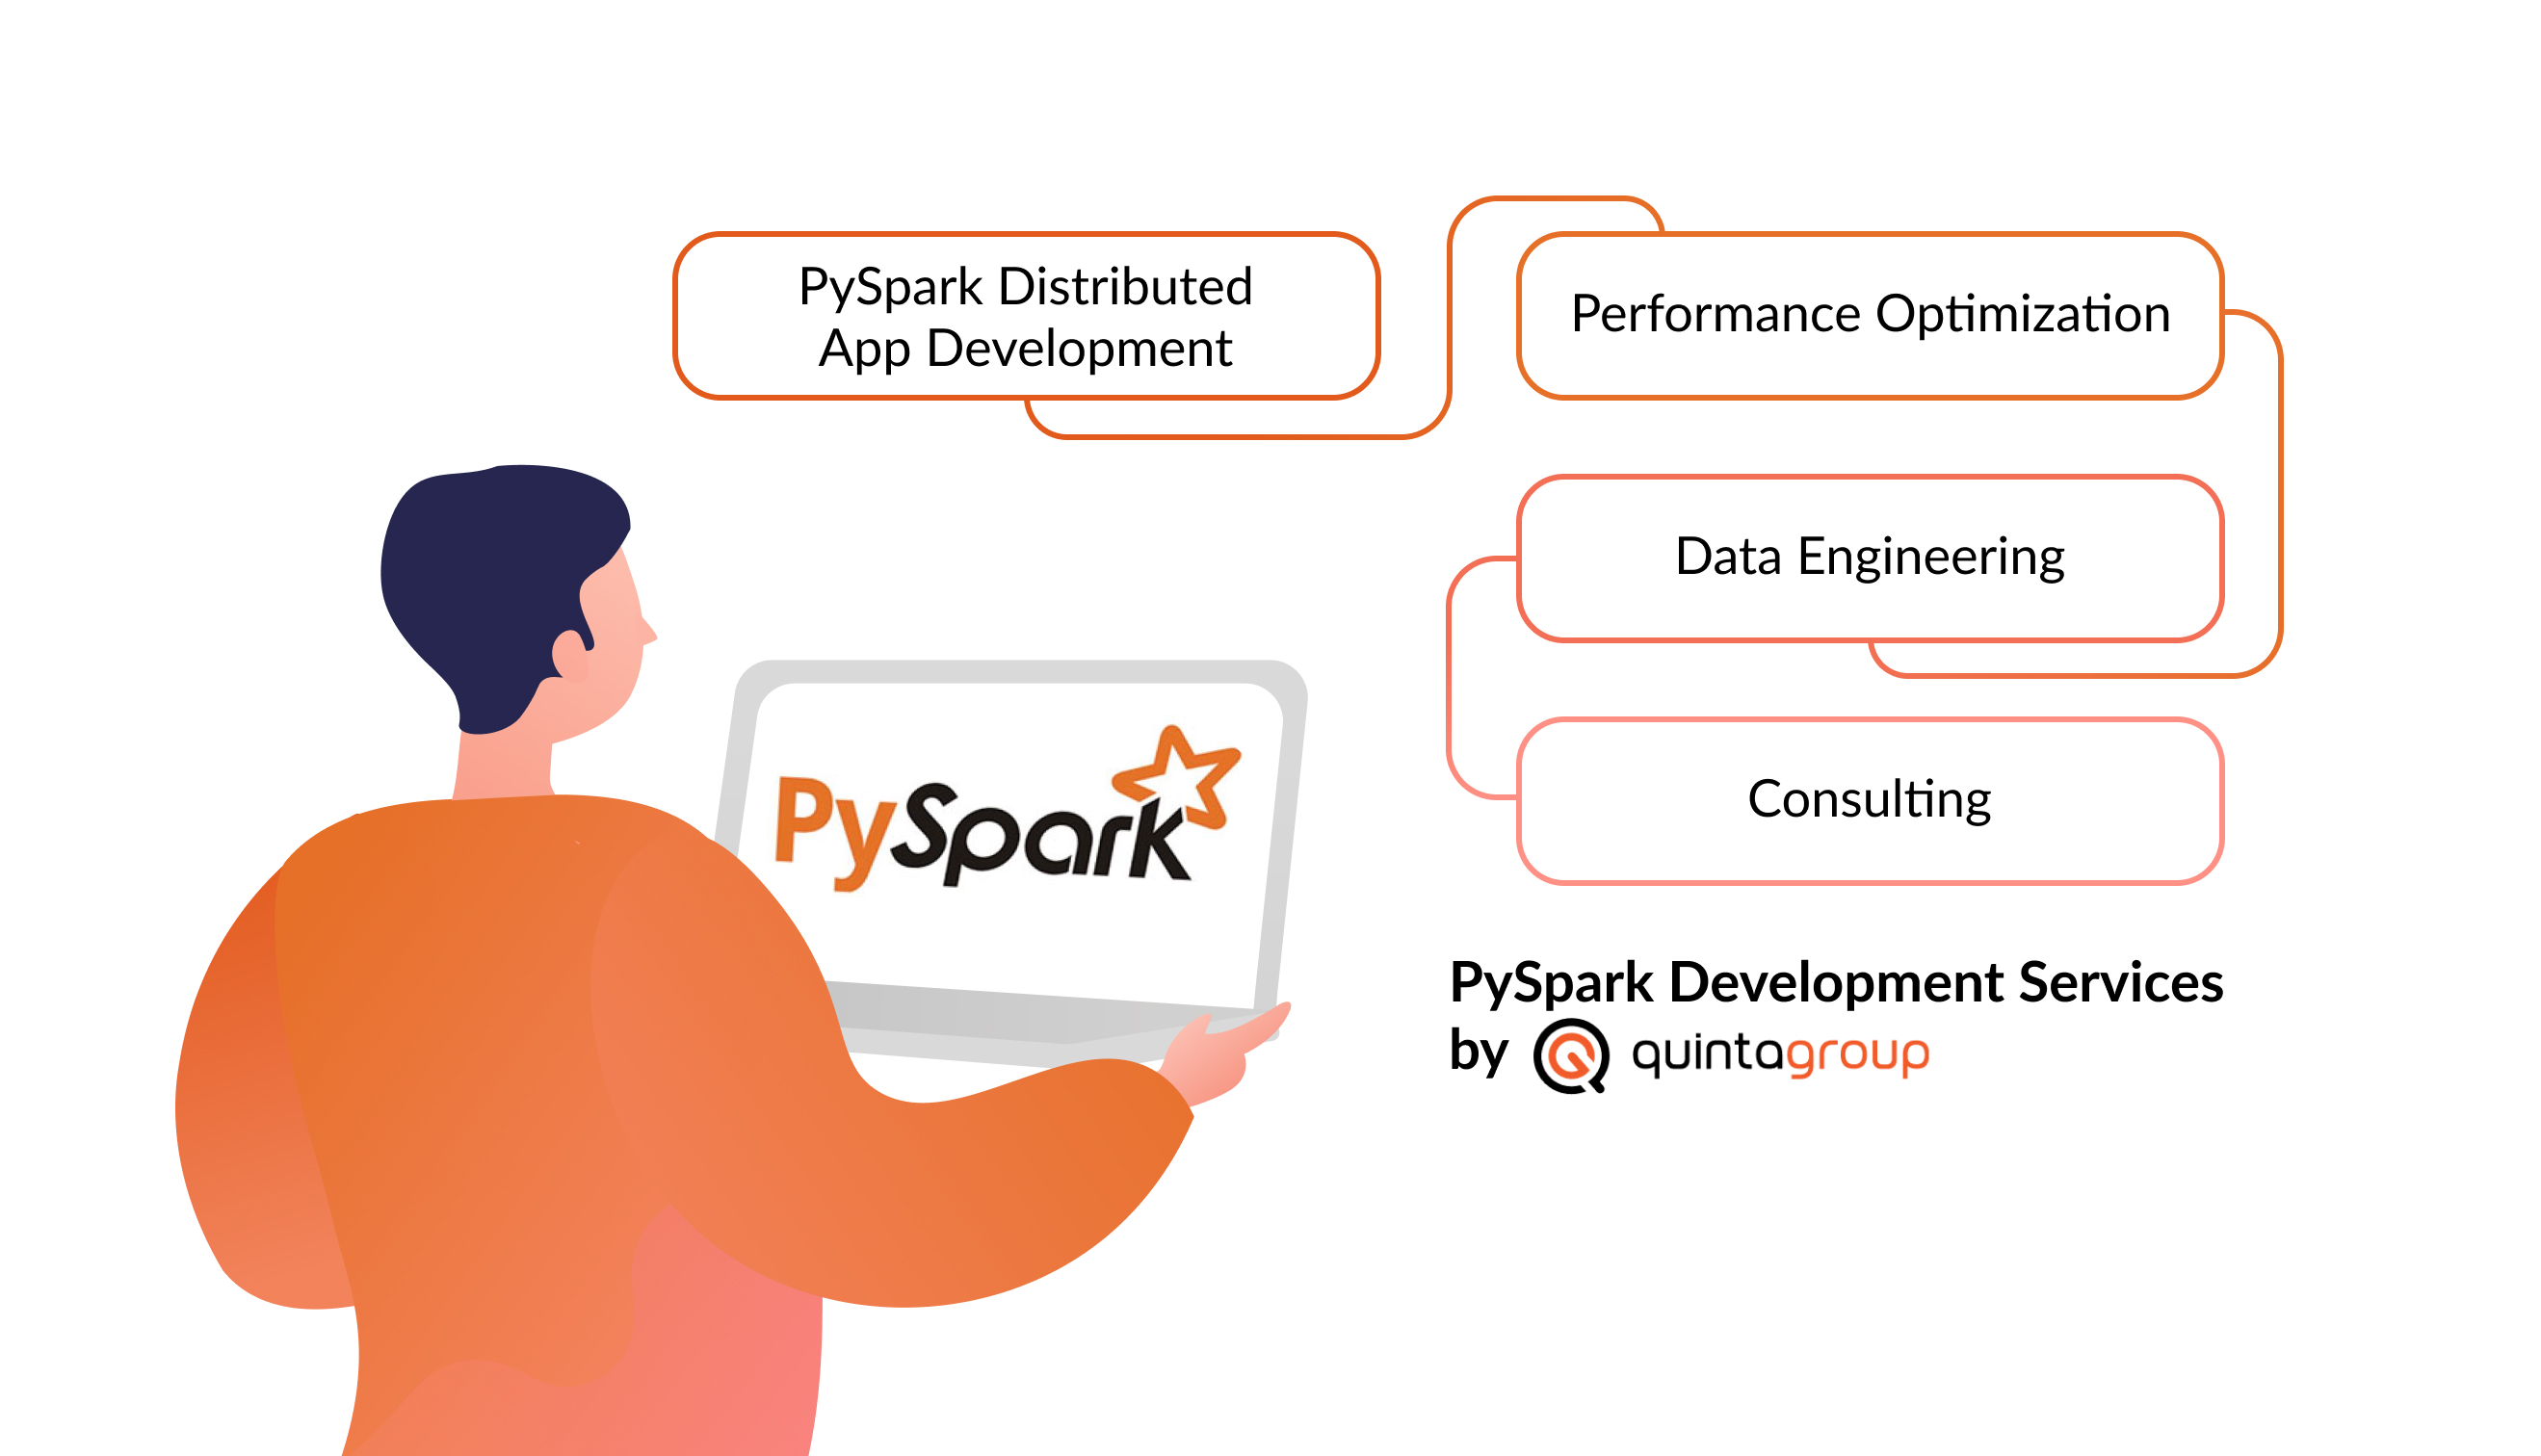 pyspark development services by quintagroup